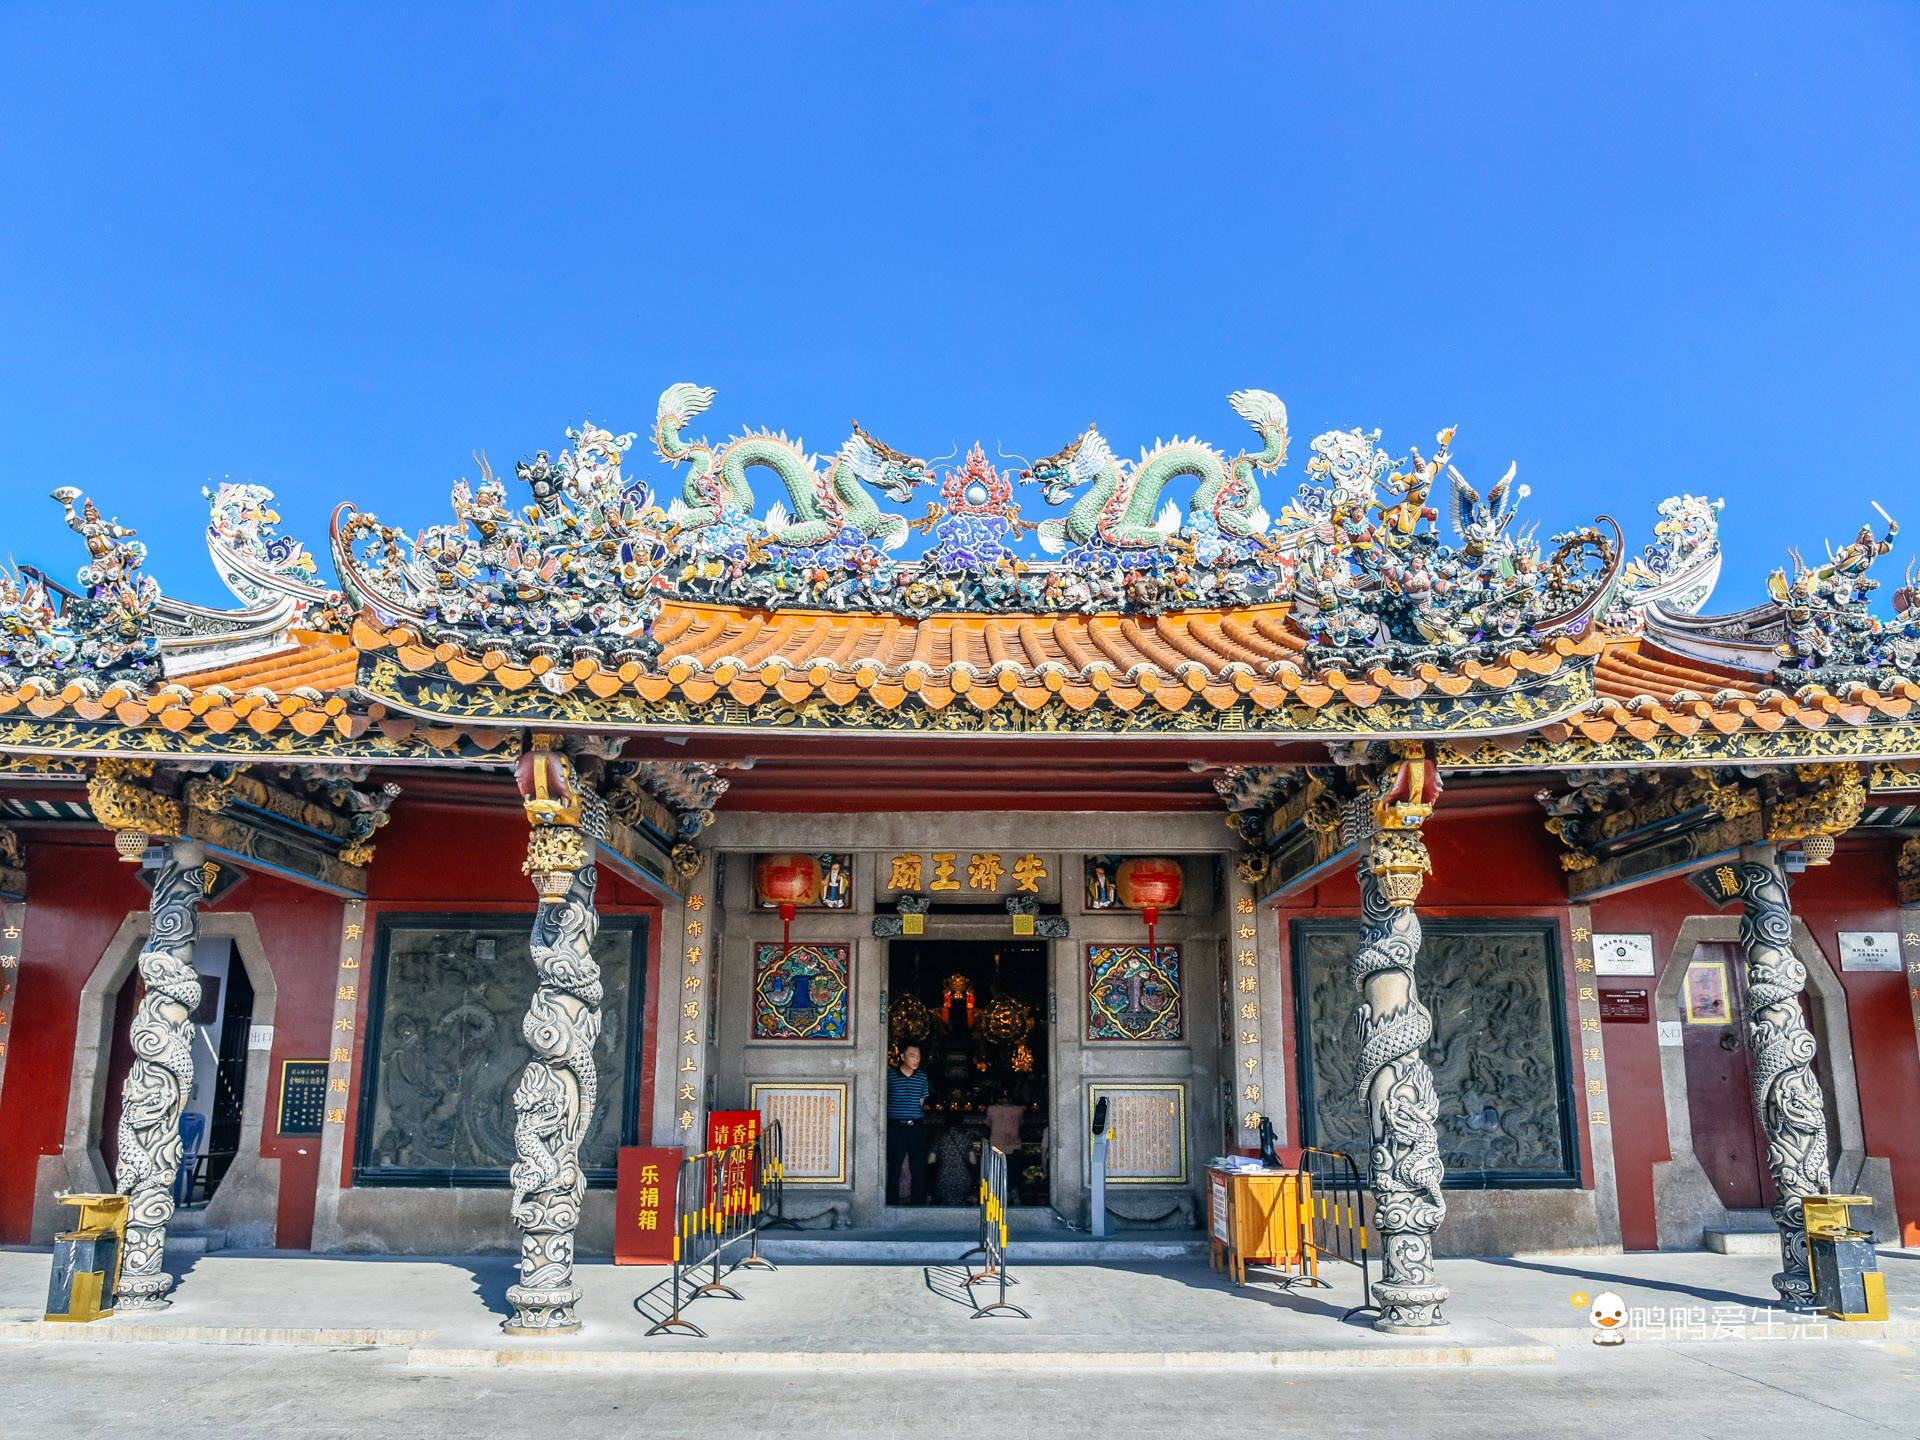 青龙古庙号称潮州第一庙,汇集当地非遗文化,屋顶嵌瓷太精美